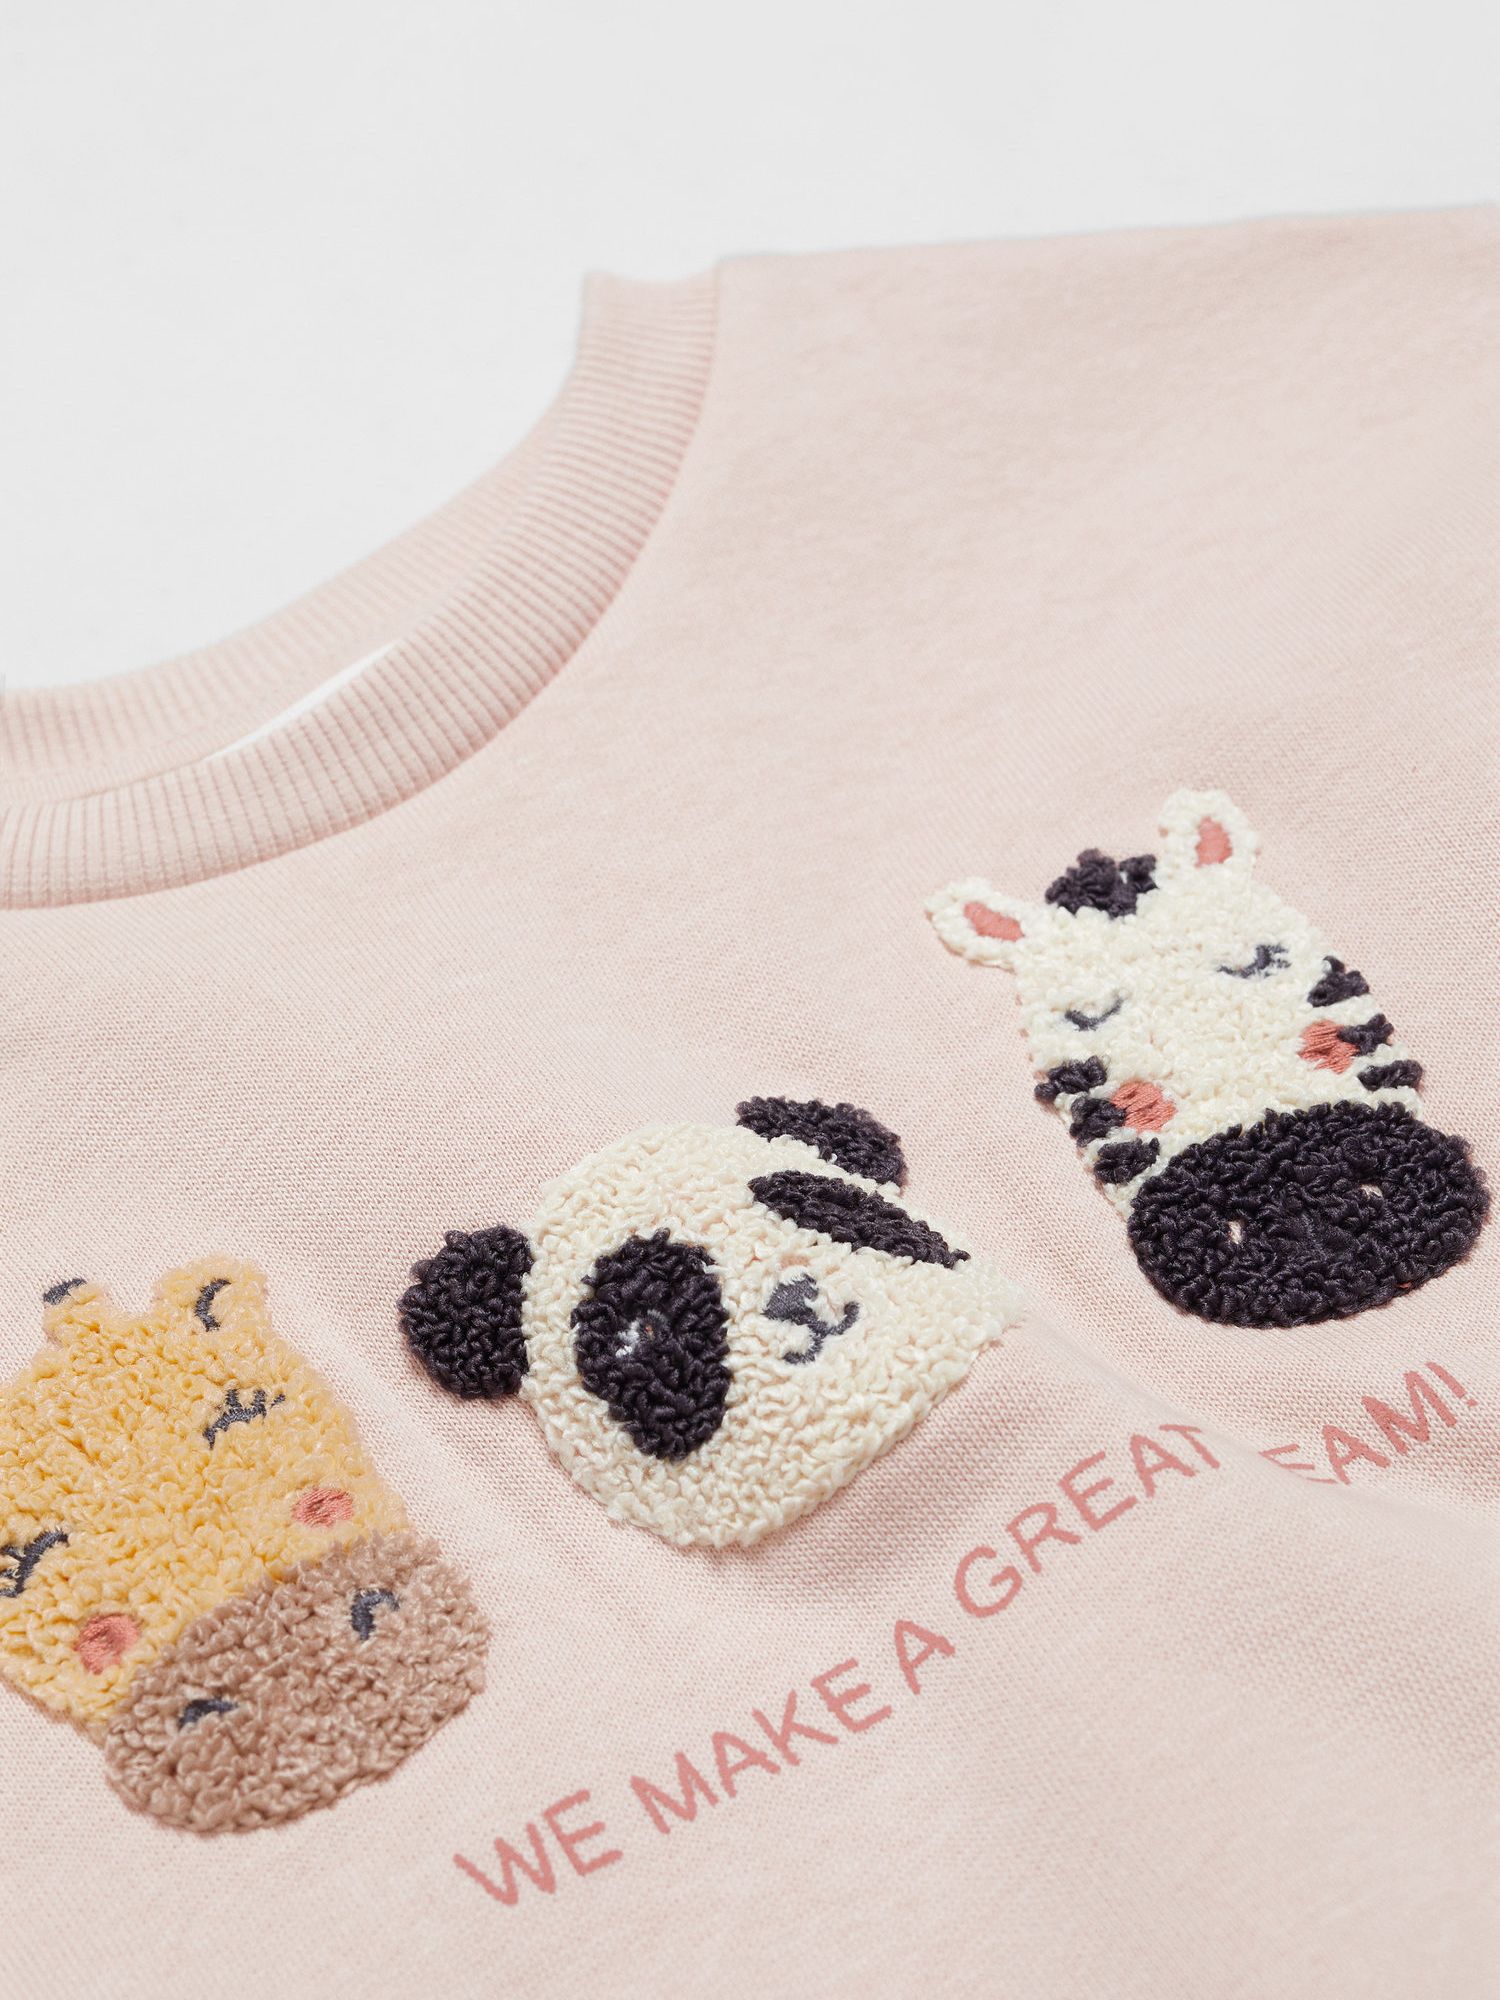 Mango Kids' Embroidered Animal Team Sweatshirt, Pink, 12-18 months